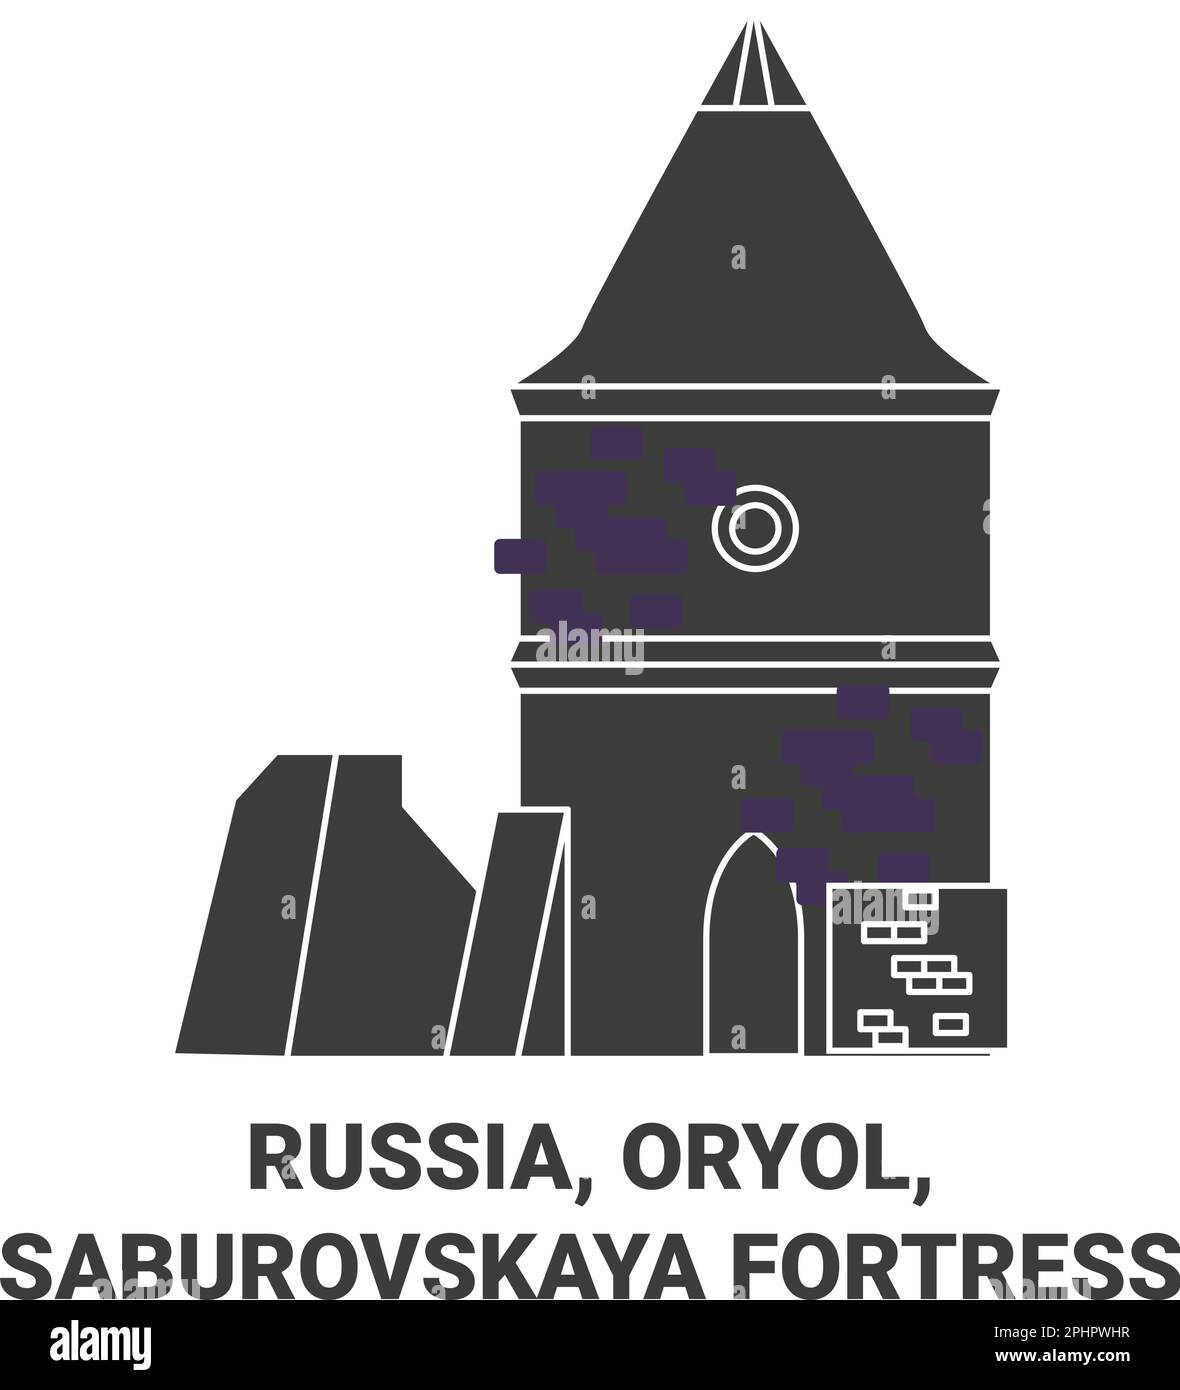 Russia, Oryol, Saburovskaya Fortress travel landmark vector illustration Stock Vector